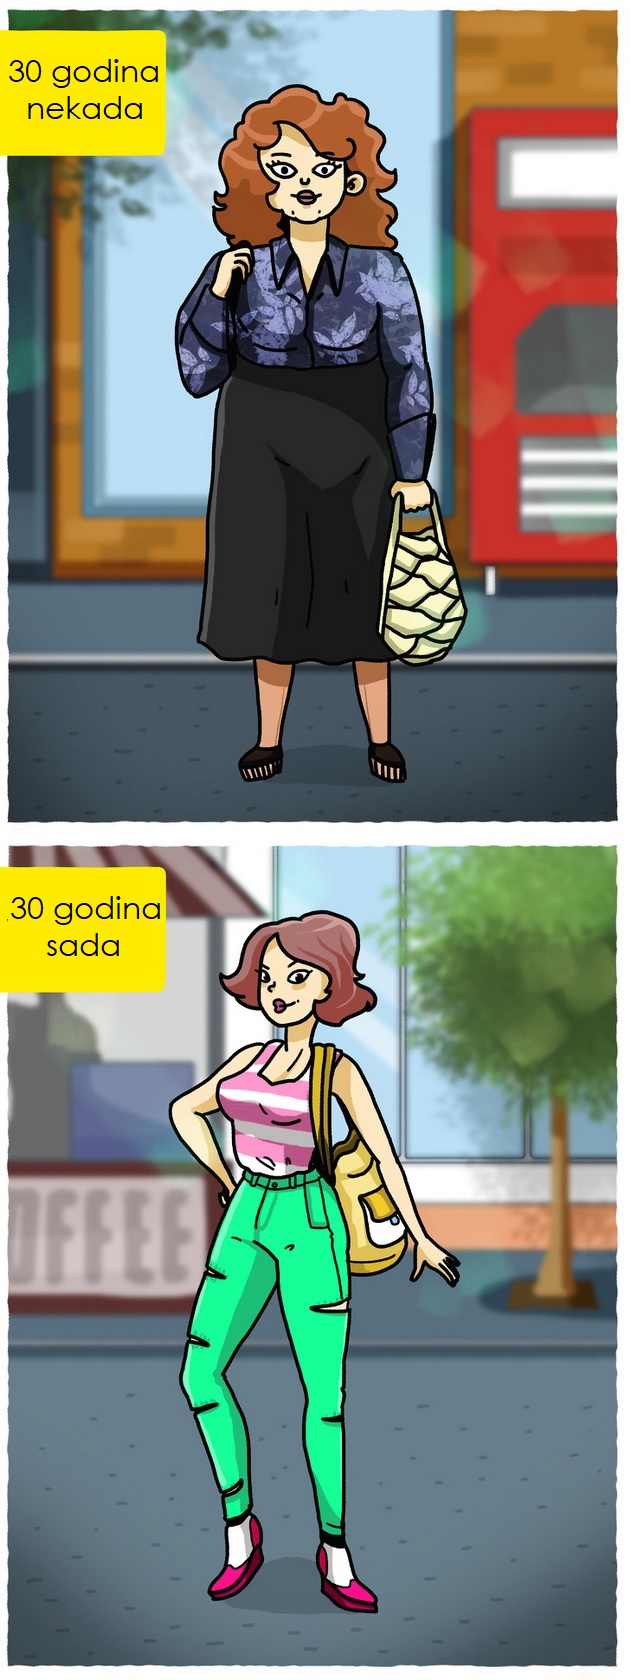 30-godisnje-devojke-danas-vs-30-godisnje-devojke-nekada-kroz-ilustracije-03.jpeg